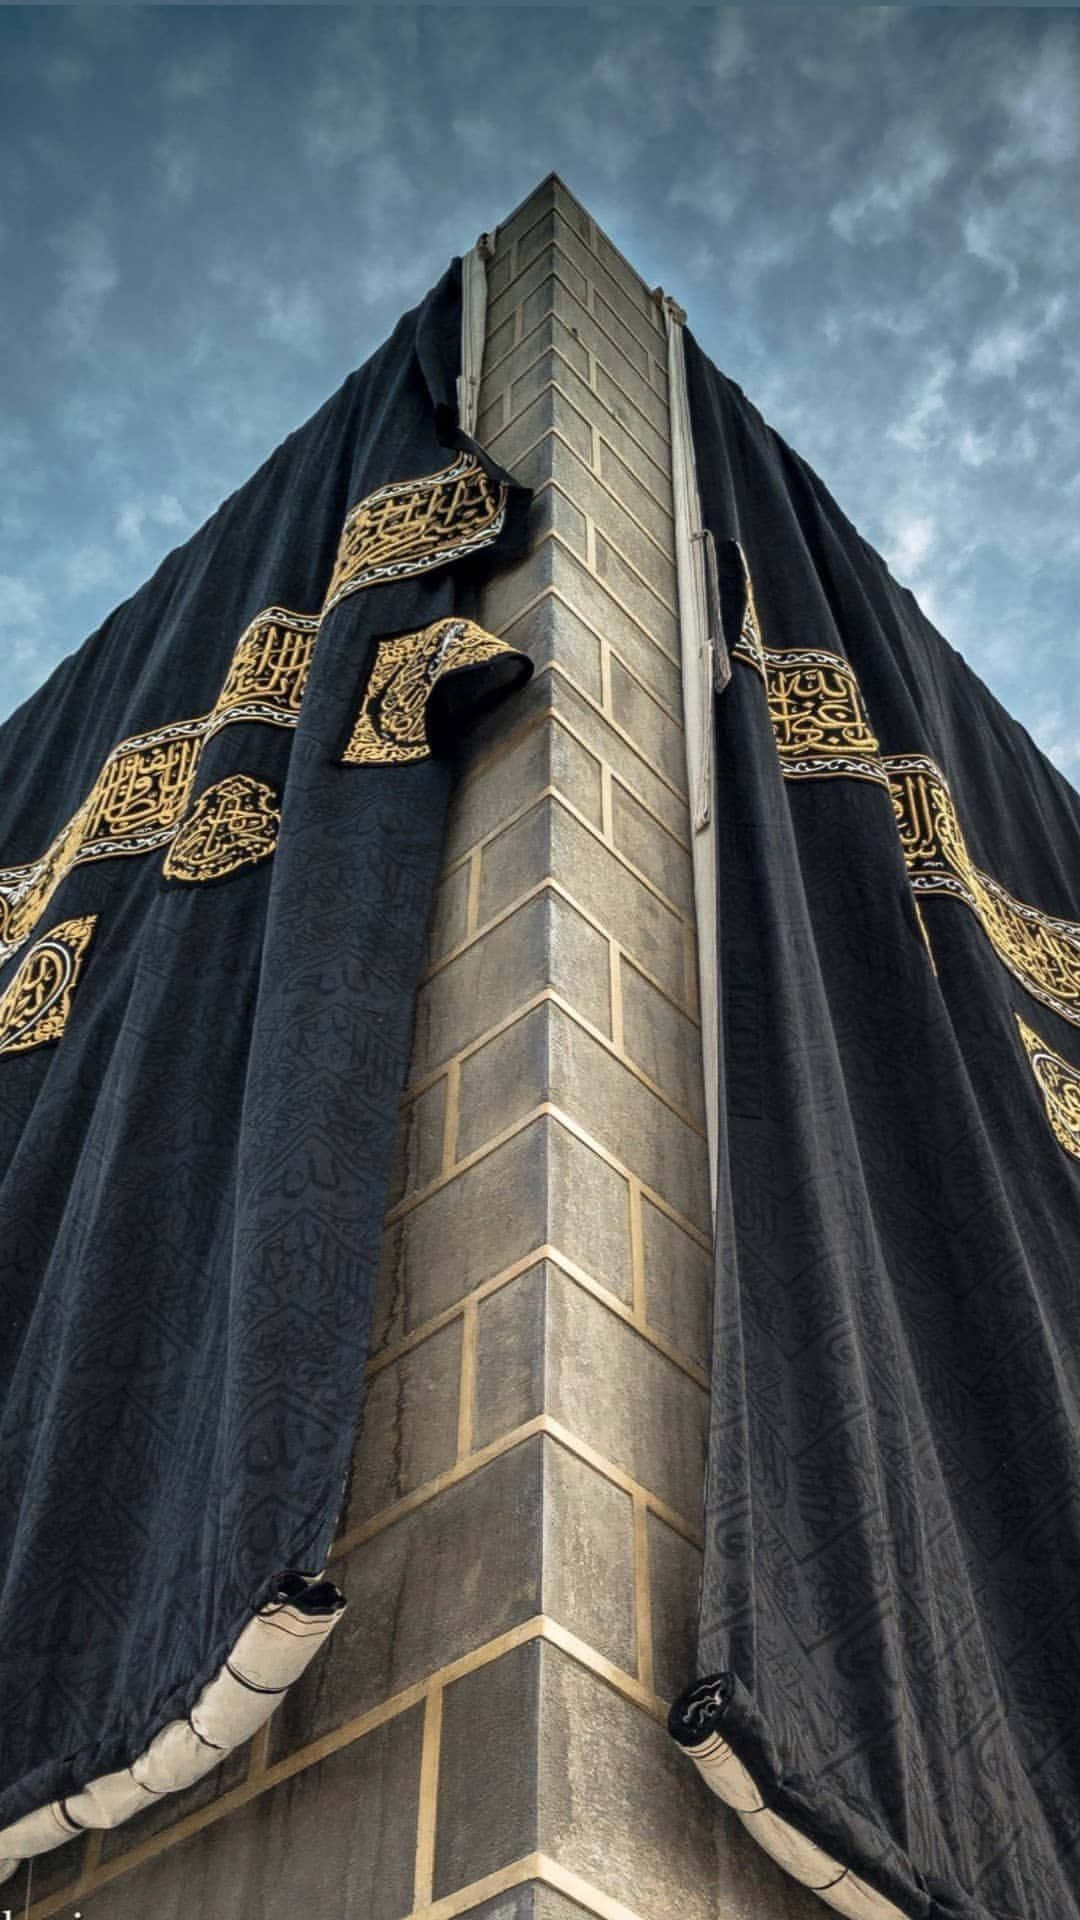 Mekkah Images - Free Download on Freepik